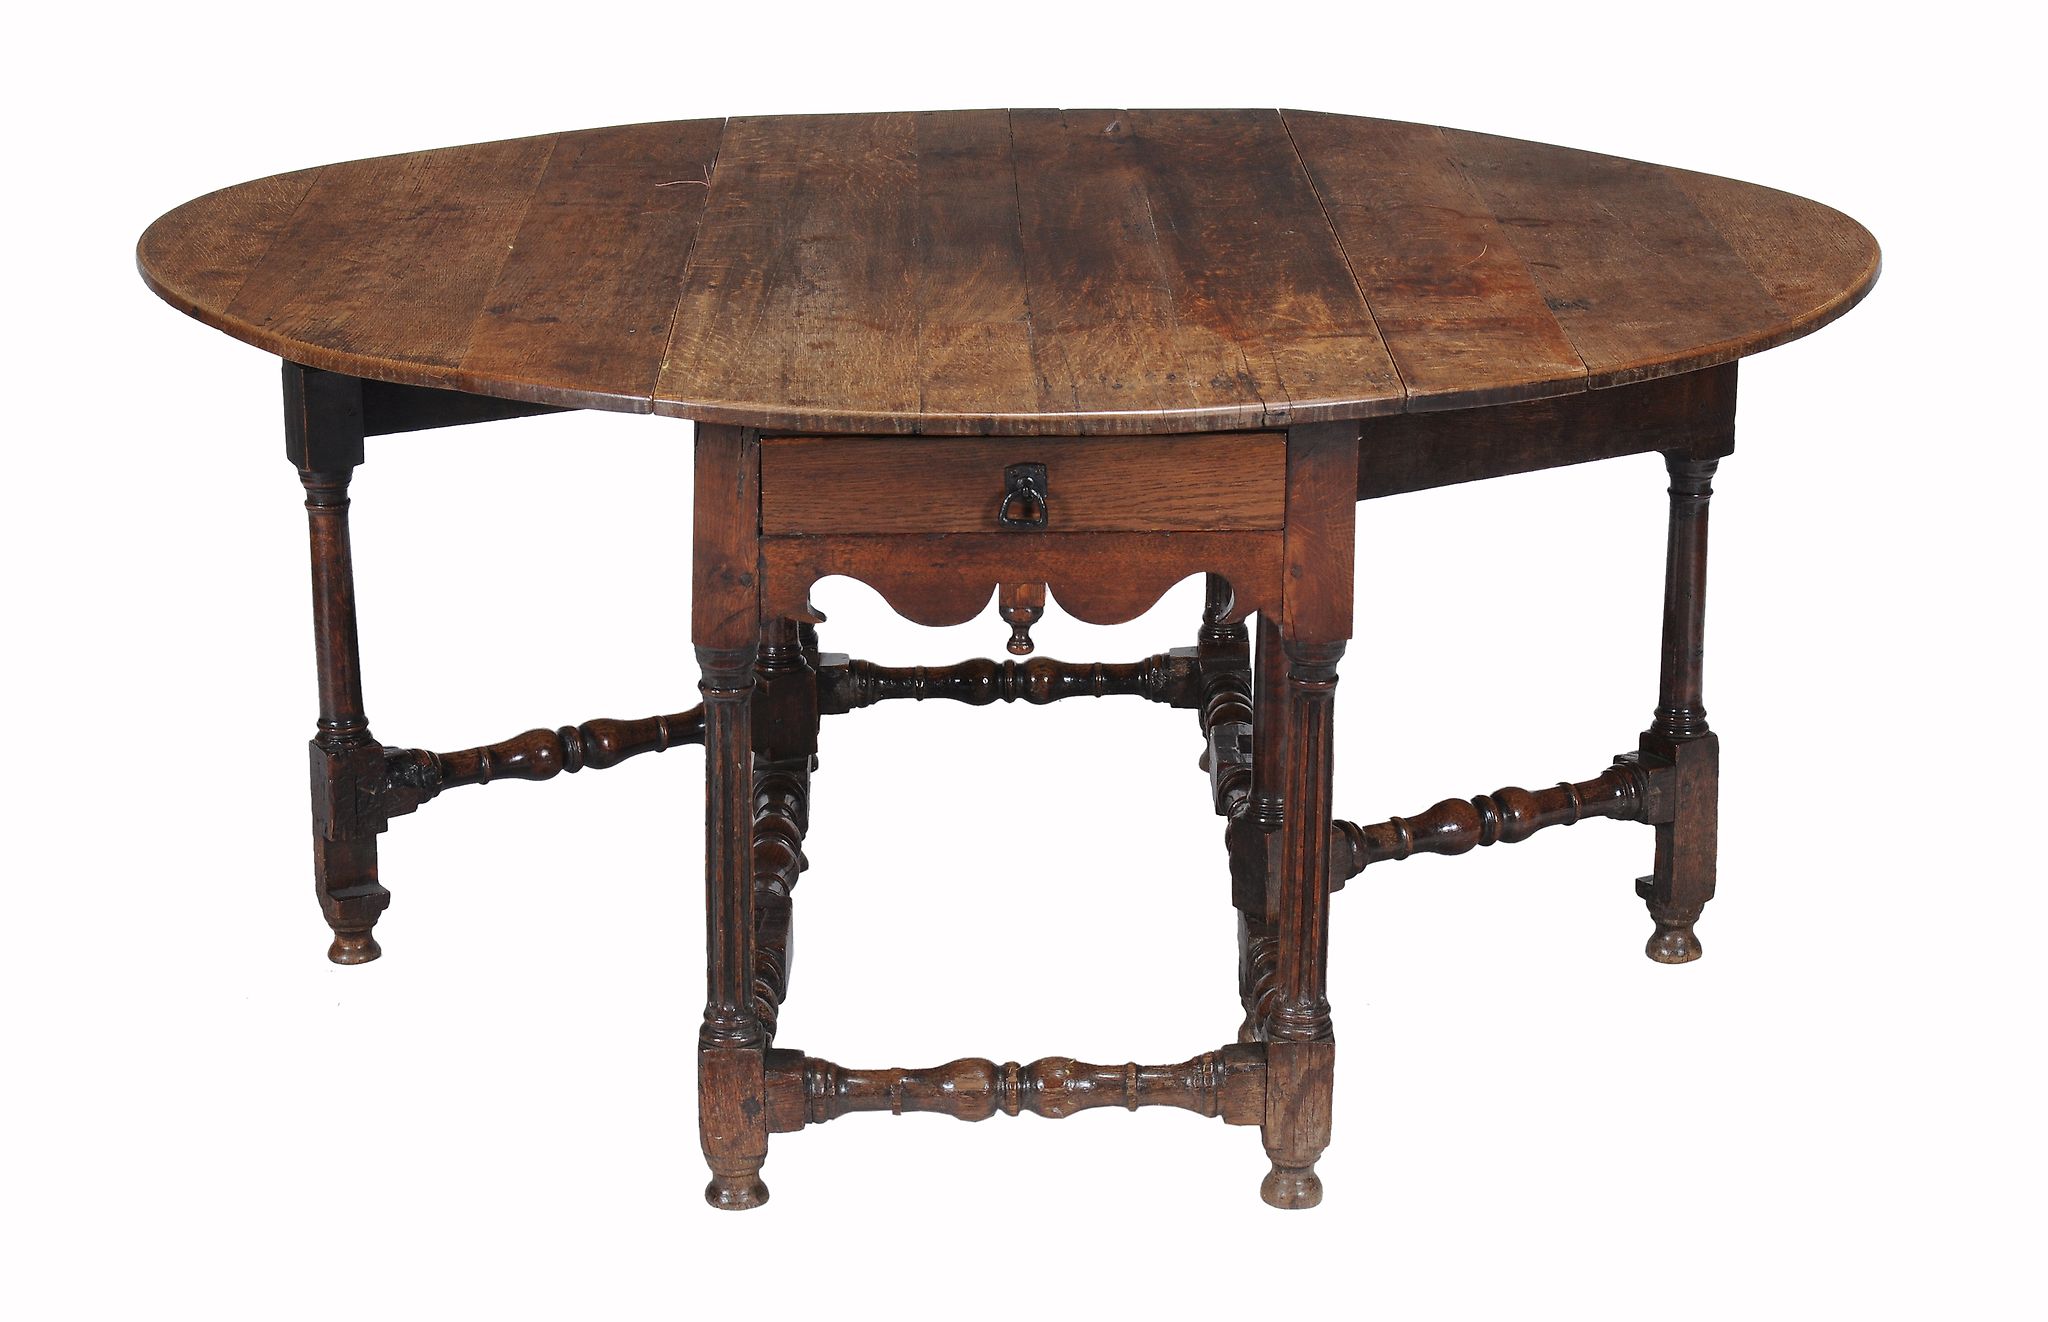 A Charles II oak gateleg table, circa 1680  A Charles II oak gateleg table,   circa 1680, the oval